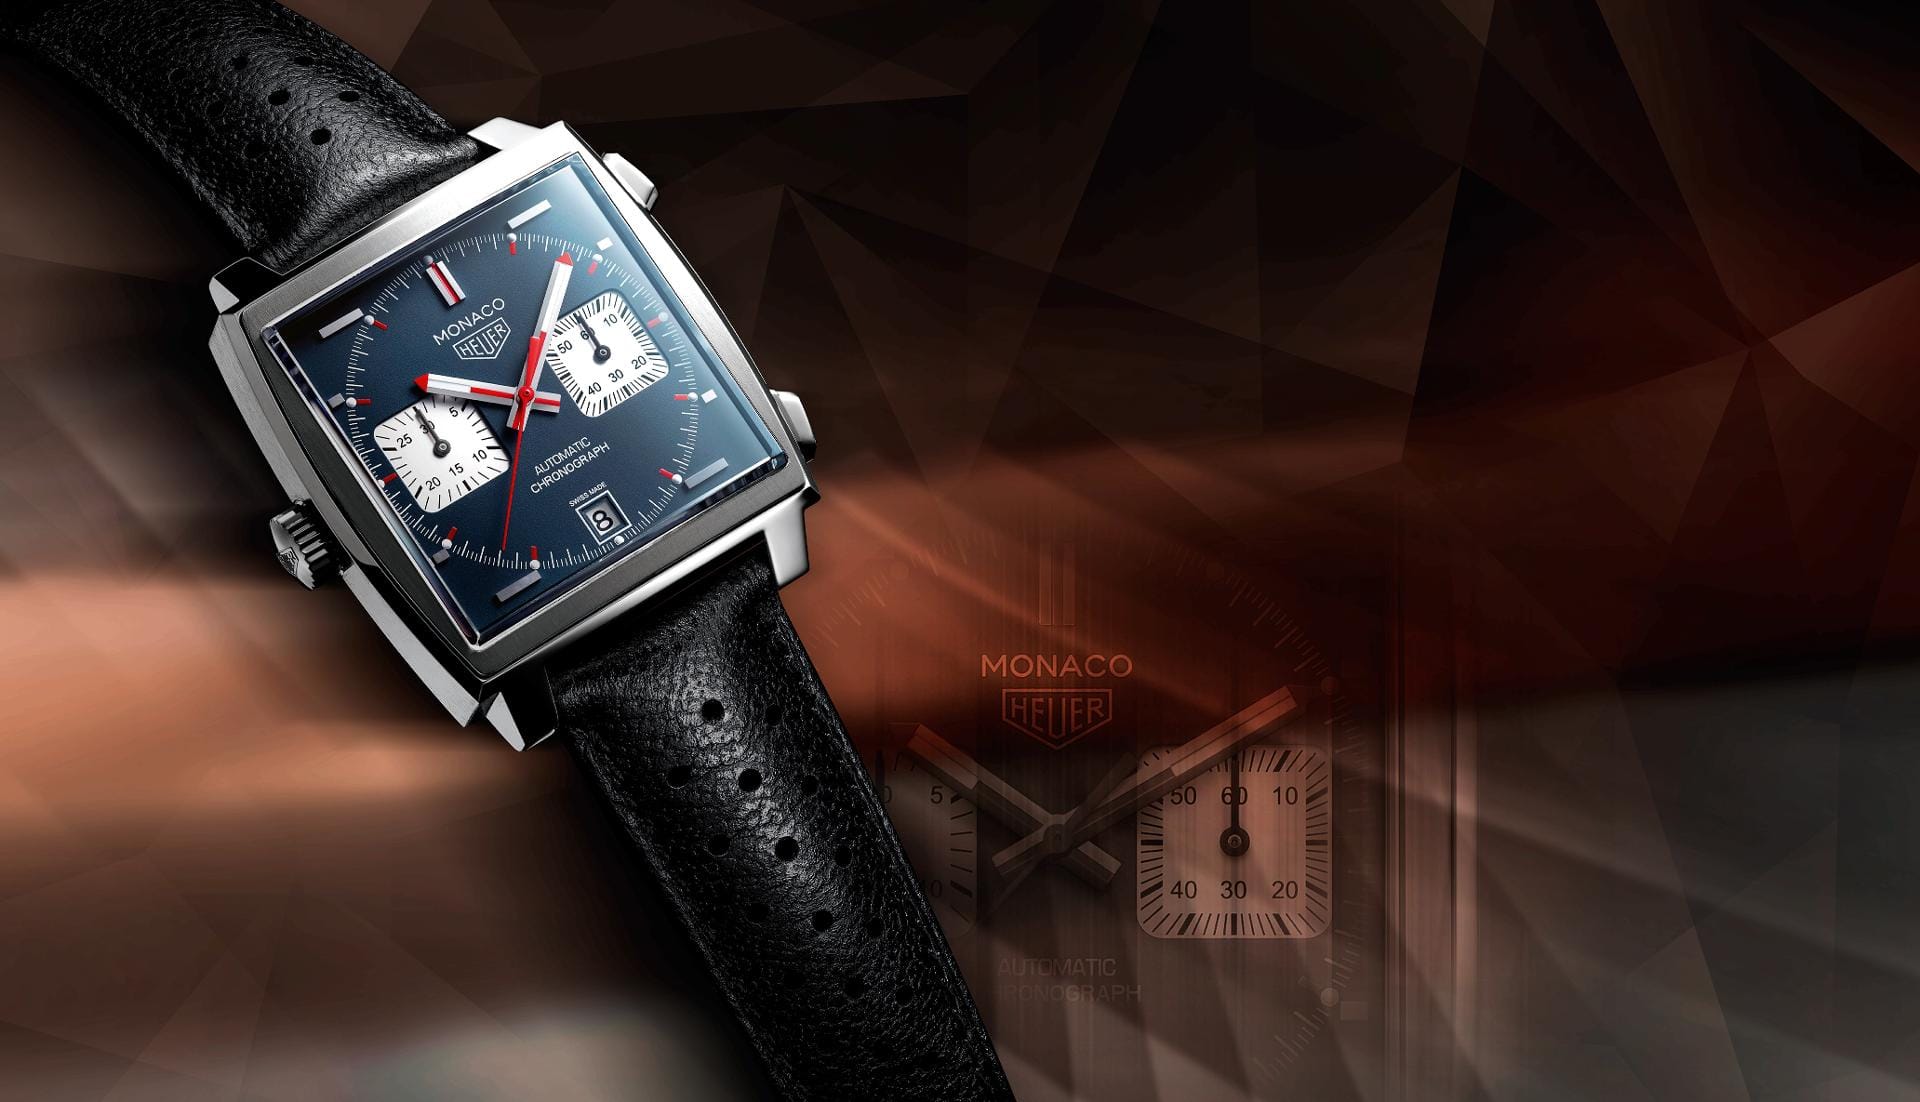 Auch von eckigen Uhren gibt es schöne Modelle mit blauem Zifferblatt wie die Tag Heuer Monaco für knapp unter 5000 Euro.